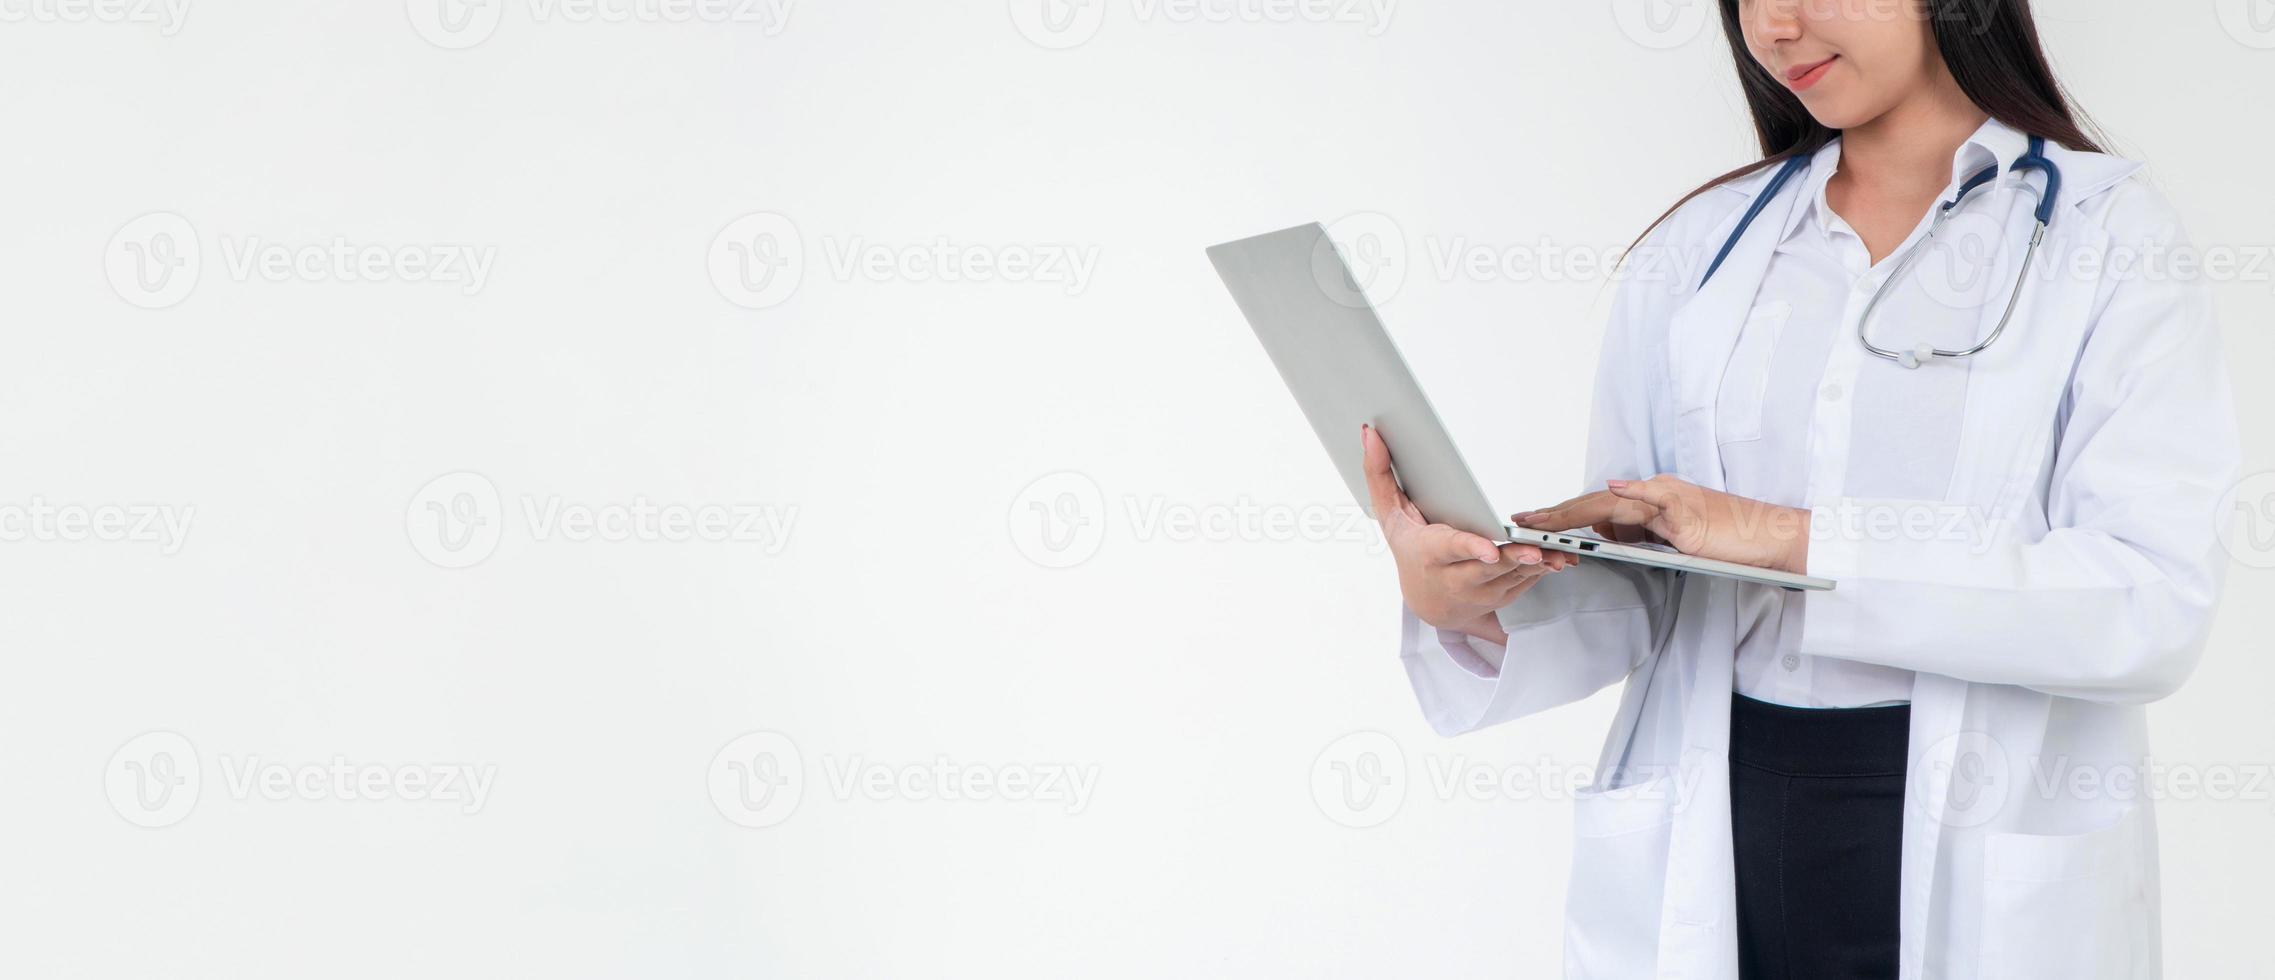 doctora o médico que sostiene una computadora portátil para verificar la salud del paciente en el hospital, concepto de información de atención médica en línea y servicio de asistencia médica de emergencia, servicio médico foto